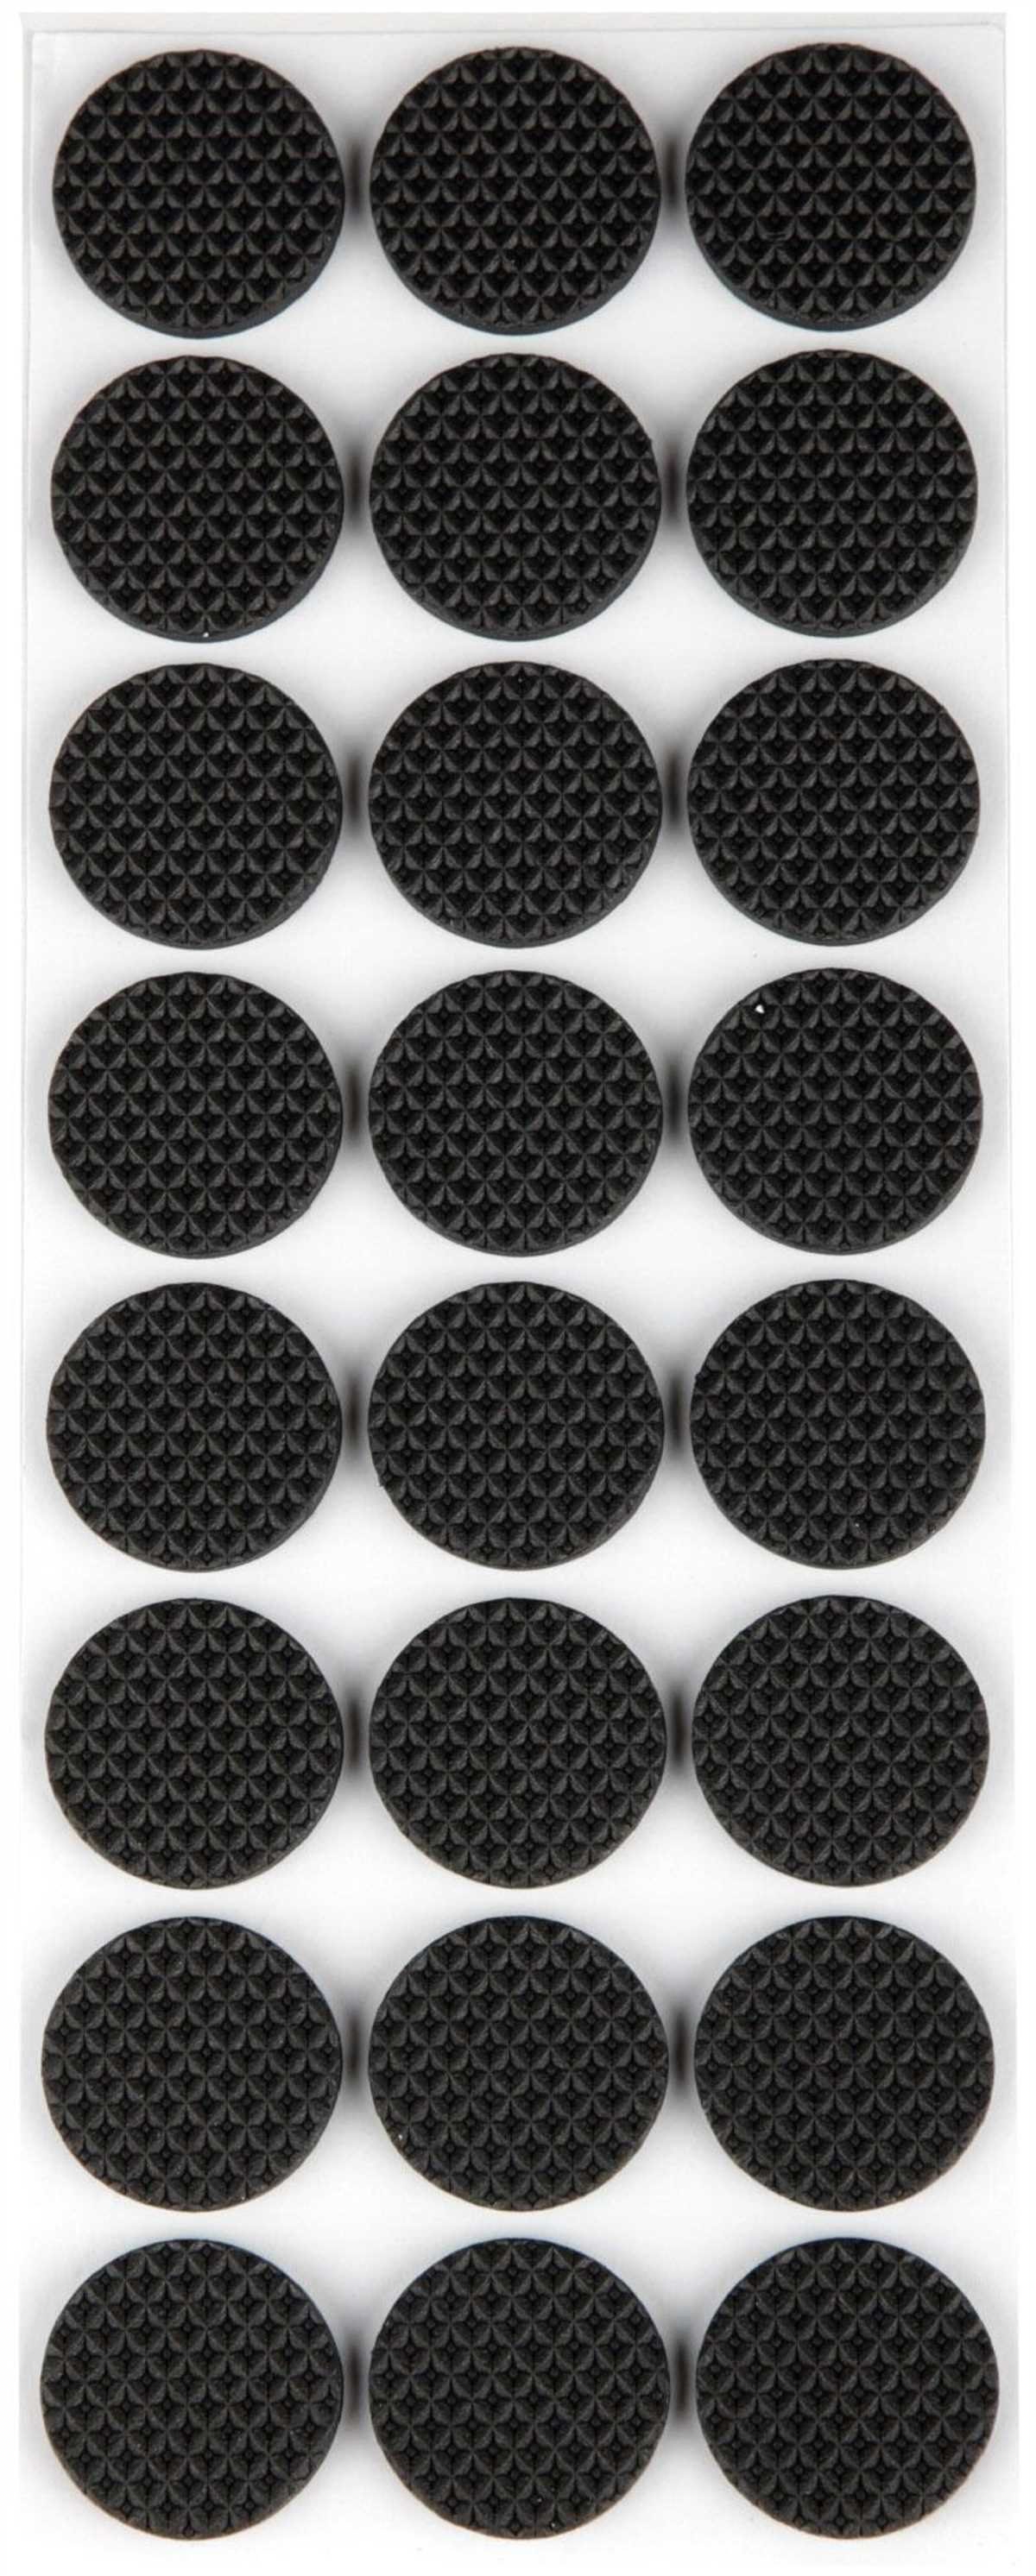 Metafranc Antirutsch-Pads schwarz eckig/rund selbstklebend Gummi